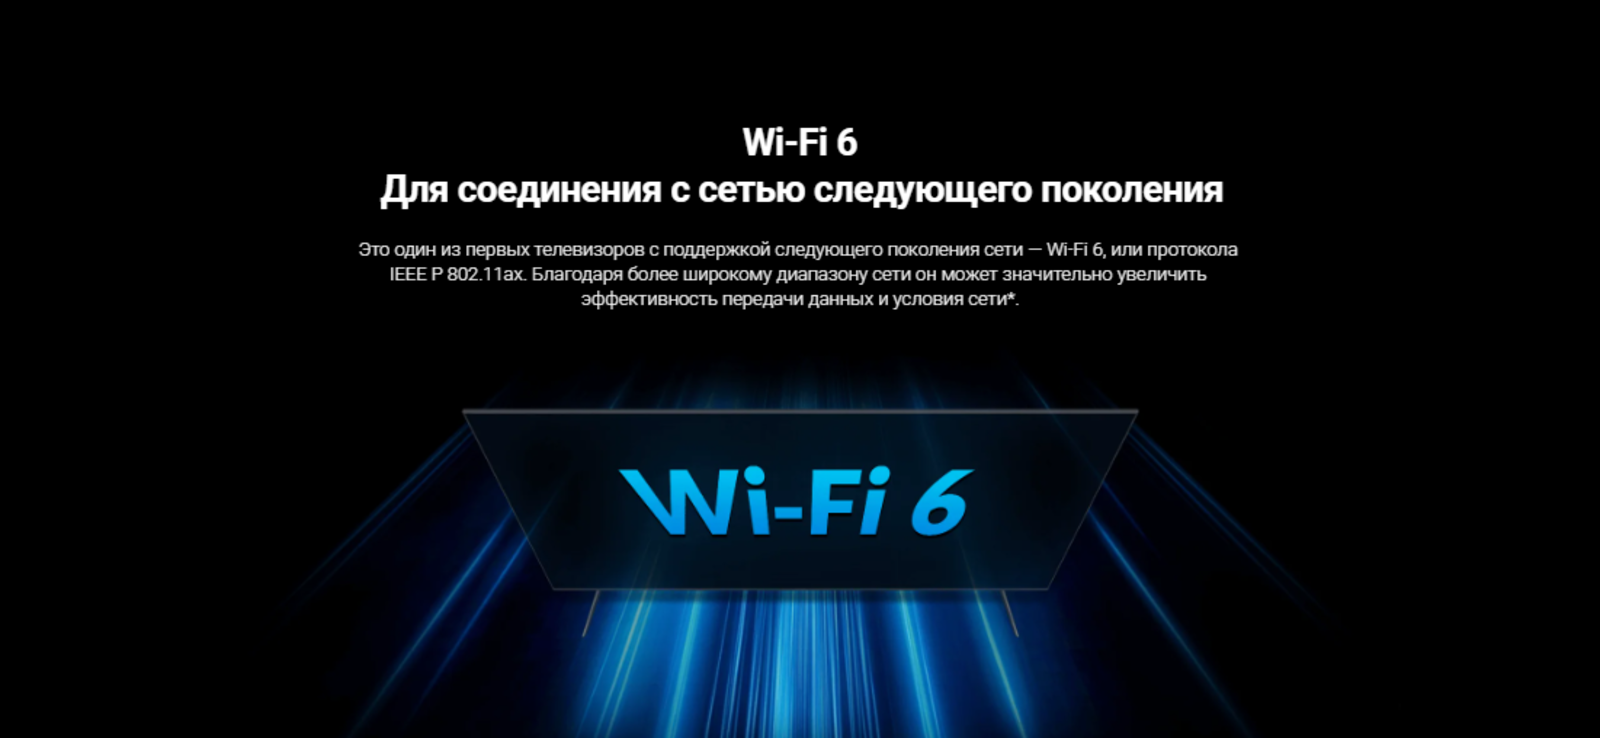 Wi-Fi 6. Для соединения с сетью следующего поколения.